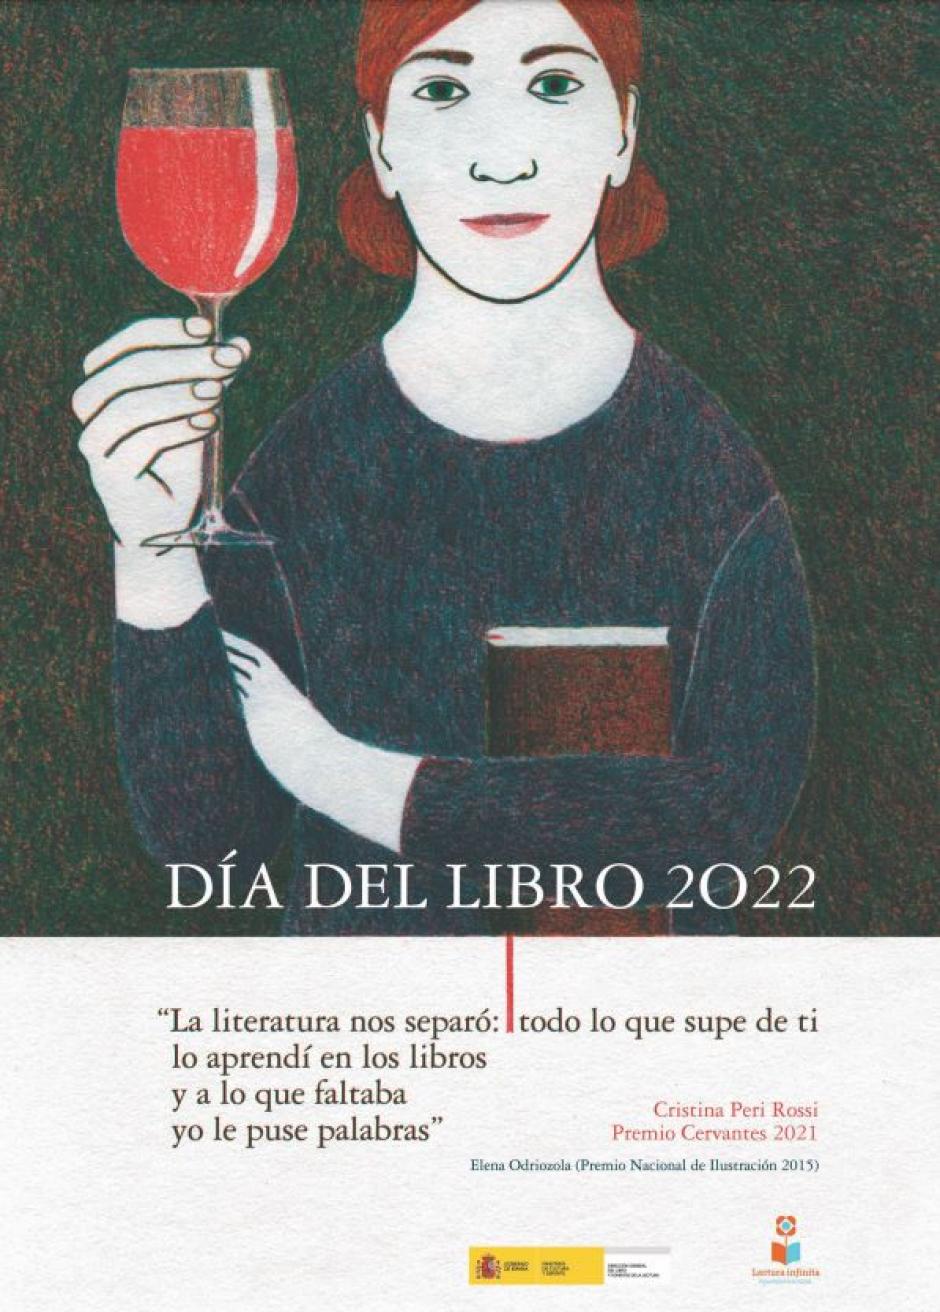 Cartel del Día del Libro 2022, con ilustración de Elena Odriozola, Premio Nacional de Ilustración 2015, y versos de Elena Peri Rossi